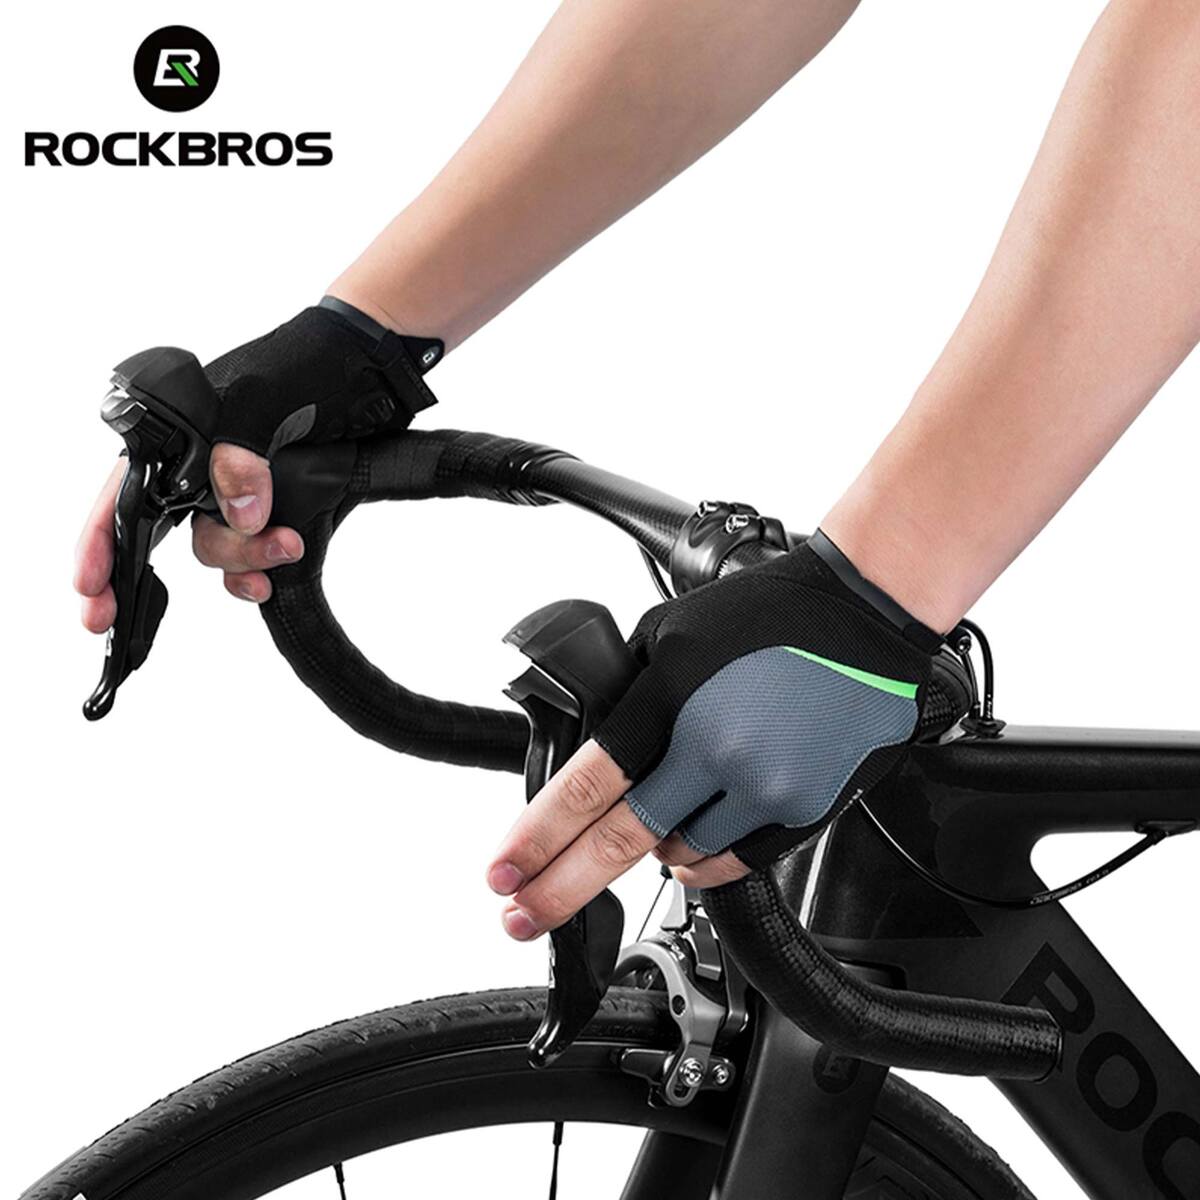 ROCKBROS Half Finger Cycling Gloves S159BGR Large